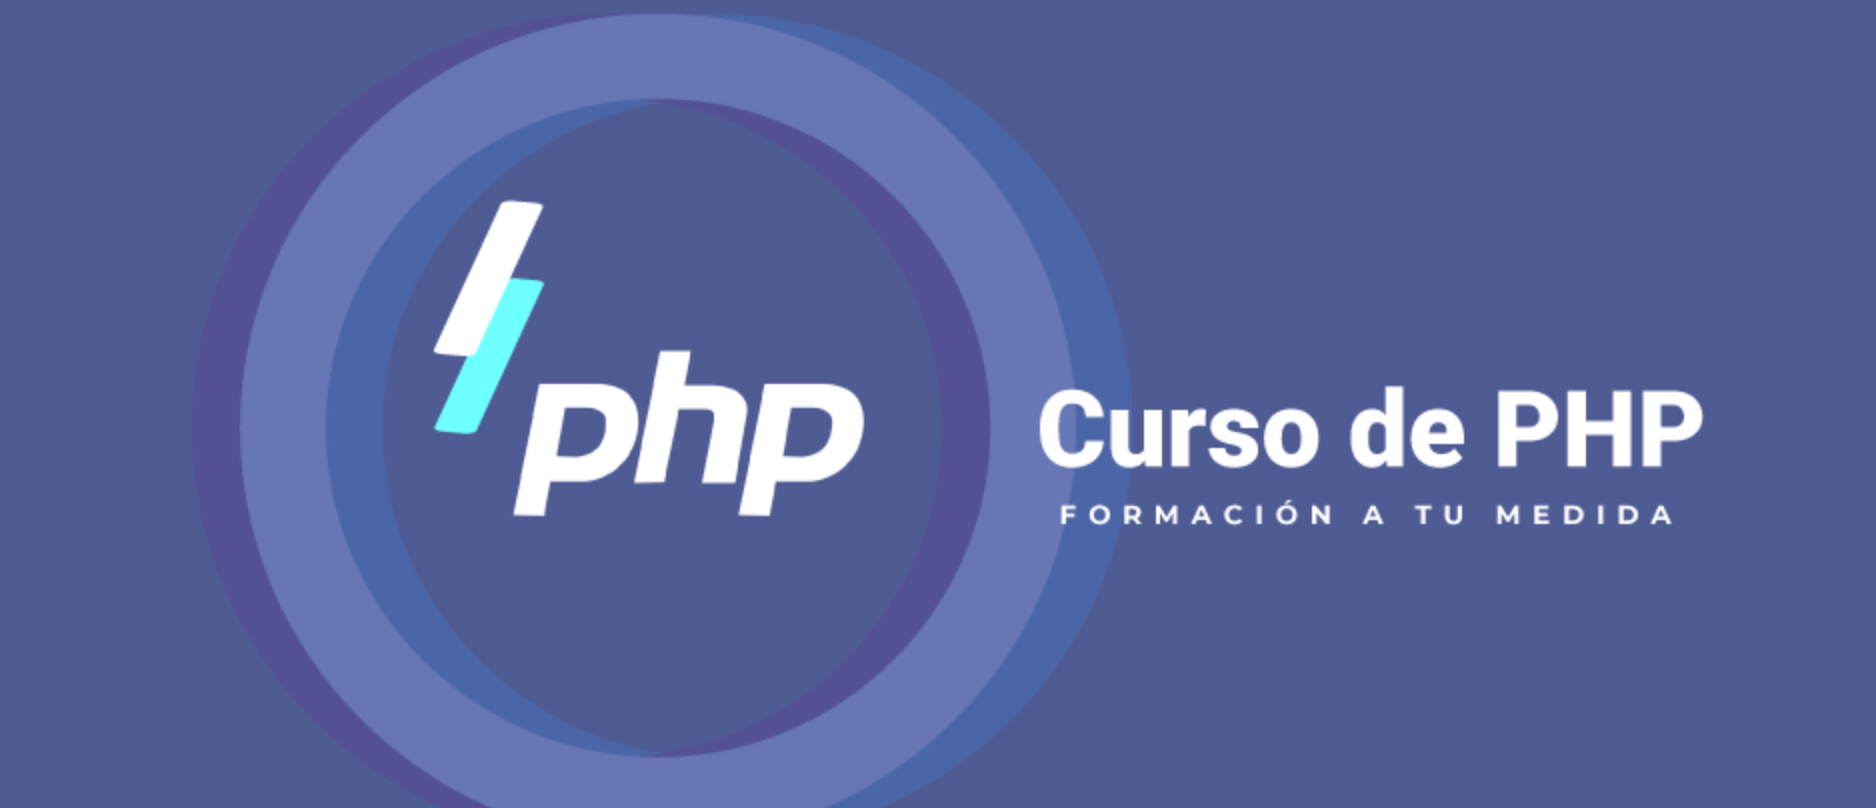 Curso de PHP Barcelona